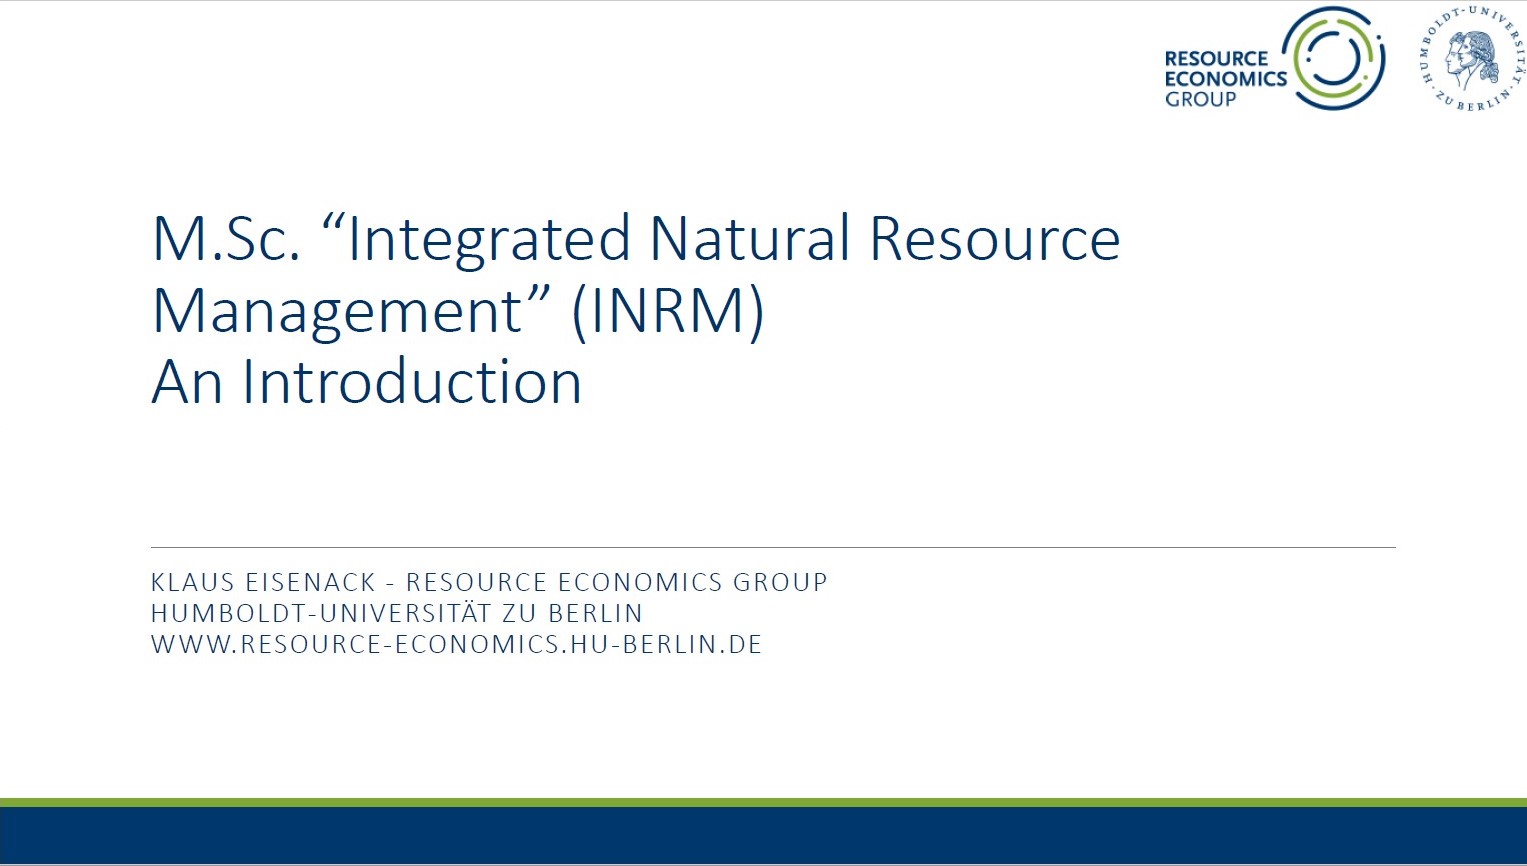 INRM - An Introduction